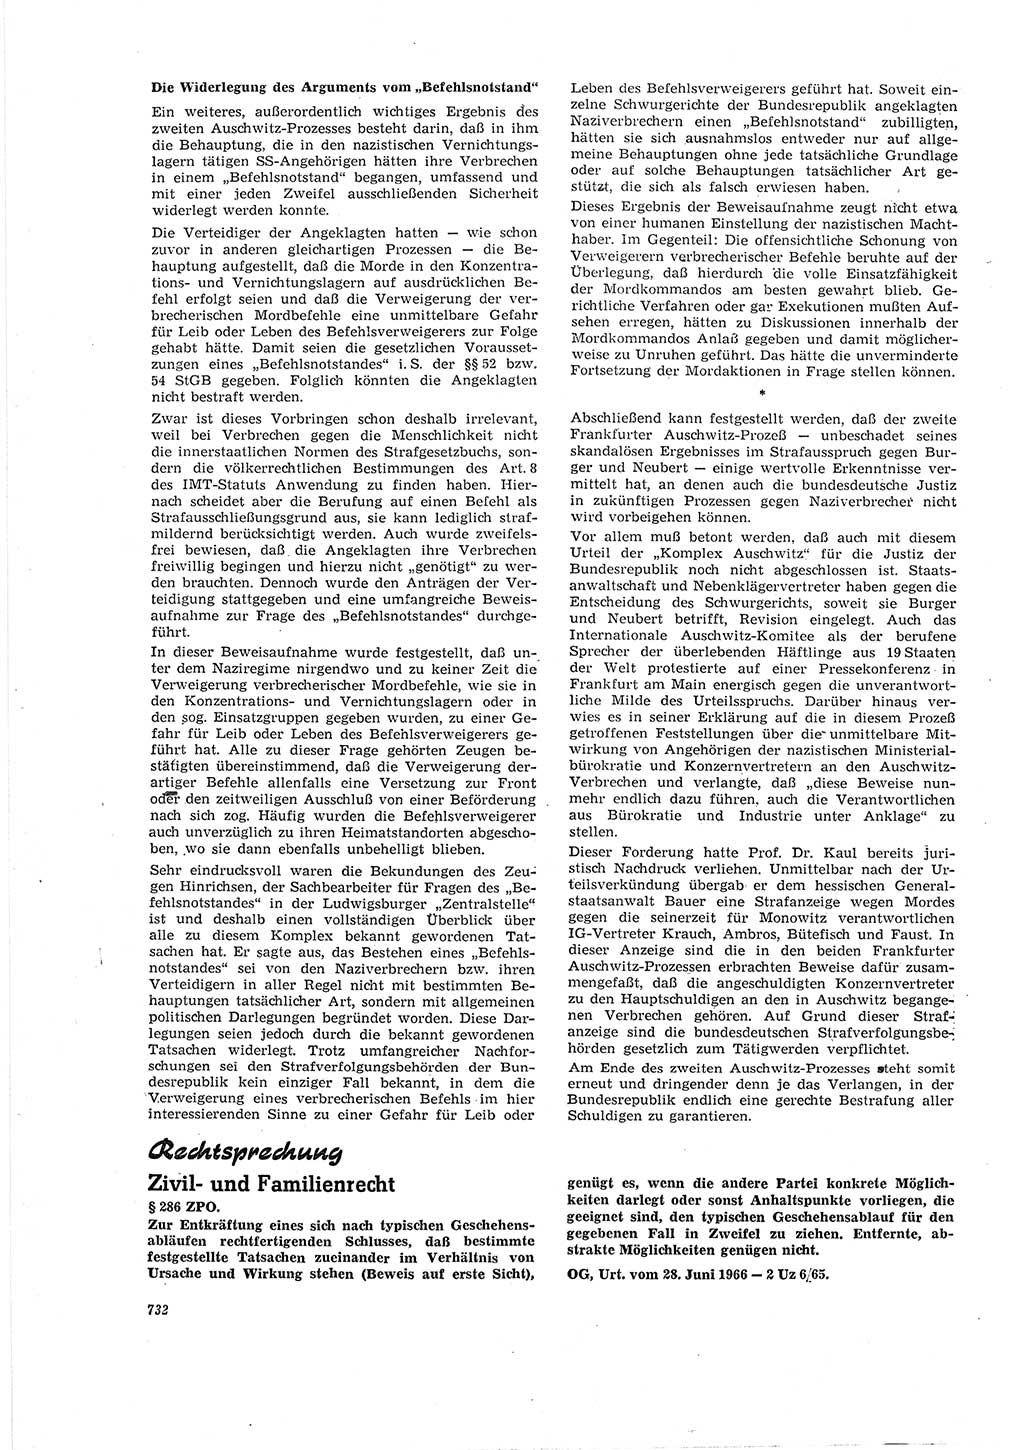 Neue Justiz (NJ), Zeitschrift für Recht und Rechtswissenschaft [Deutsche Demokratische Republik (DDR)], 20. Jahrgang 1966, Seite 732 (NJ DDR 1966, S. 732)